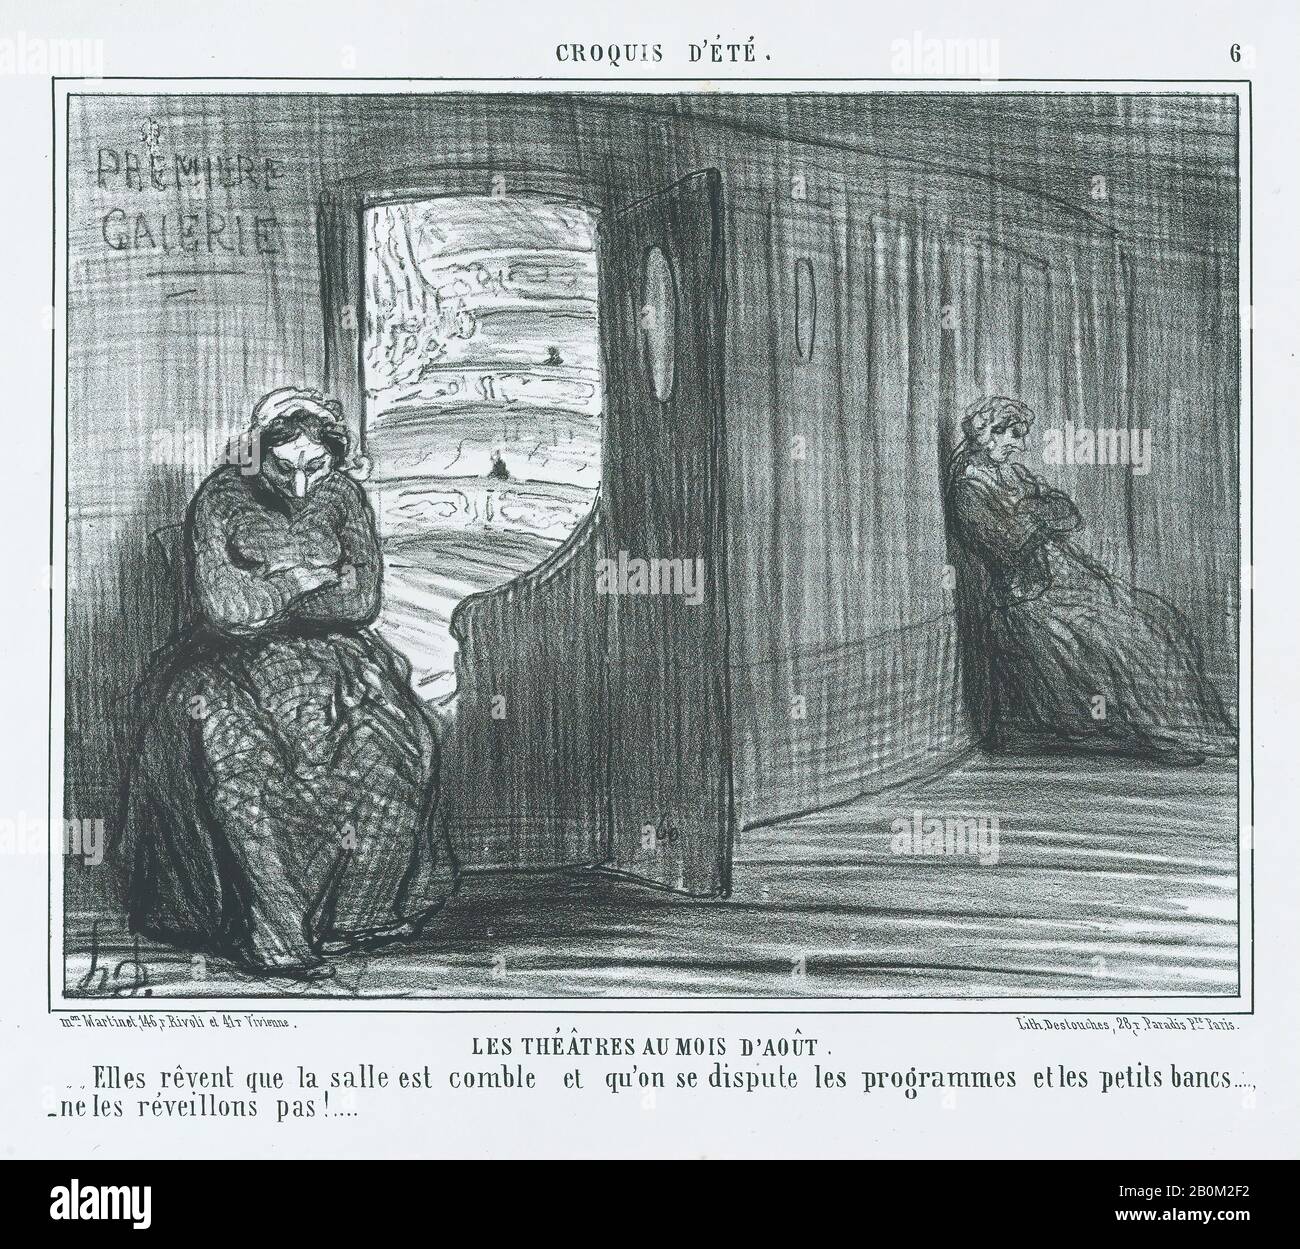 Honoré Daumier, Les Théâtres au Mois d'Août, di Croquis d'Été, pubblicato in le Charivari, 21 agosto 1856, Croquis d'Été, Honoré Daumier (francese, Marsiglia 1808-1879 Valmondois), 21 agosto 1856, Litograph; secondo stato di due (Delteil), 1/8 foglio: 10 13/16 × nel 14 agosto 1856. (27,5 × 35,8 cm), immagine: 7 3/4 × 10 1/8 in. (19,7 × 25,7 cm), stampe Foto Stock